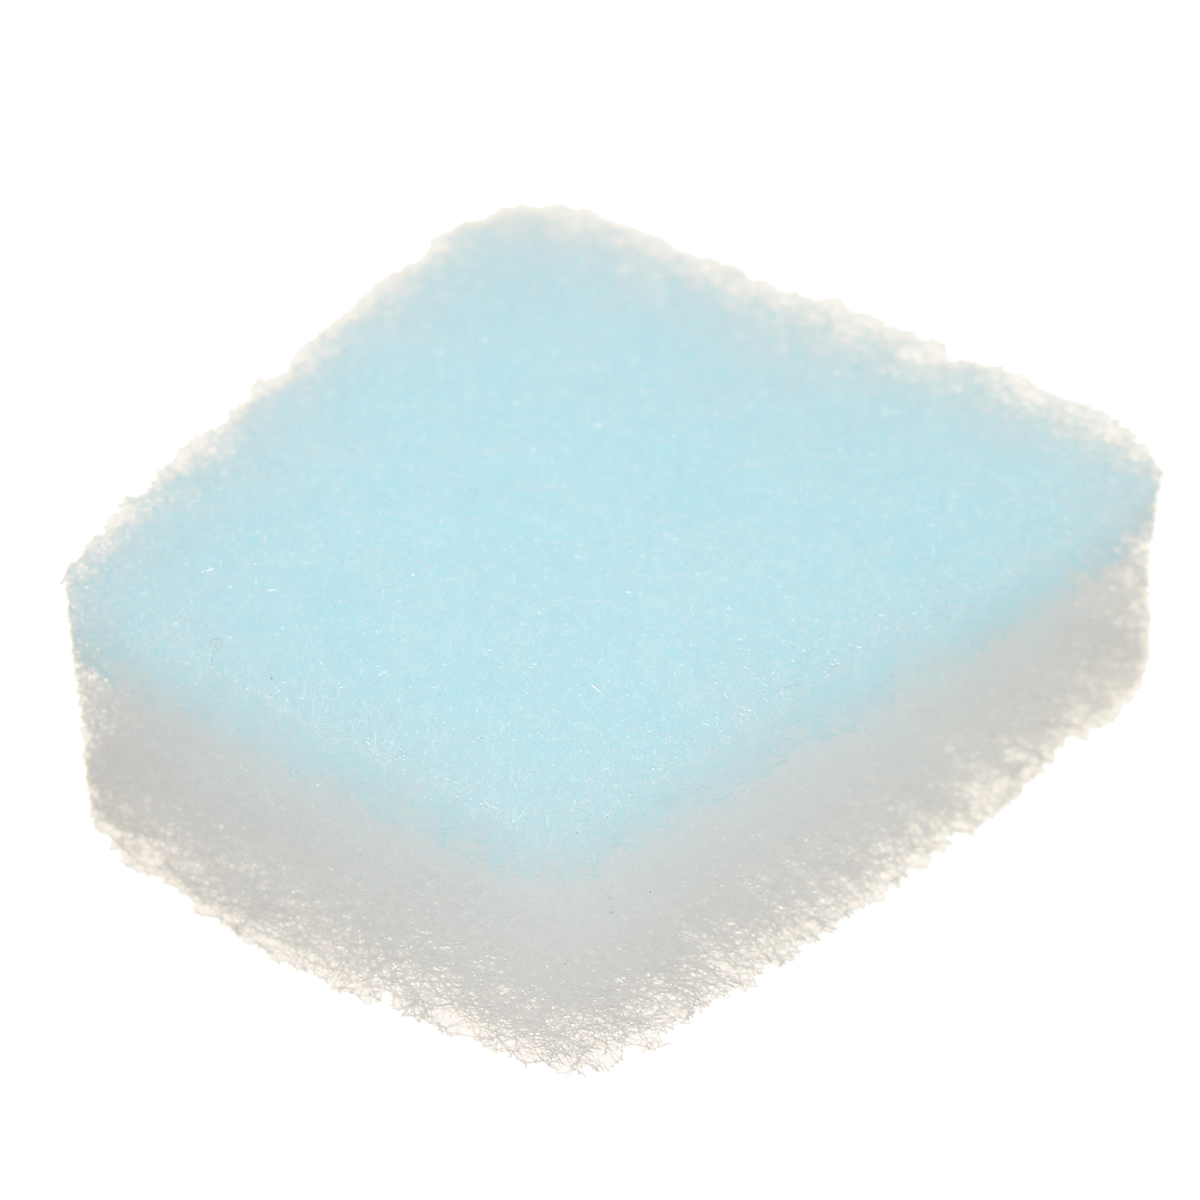 1-PC-Hypoallergenic-Filter-Sponge-Foam-for-ResMed-S7-S8-1242032